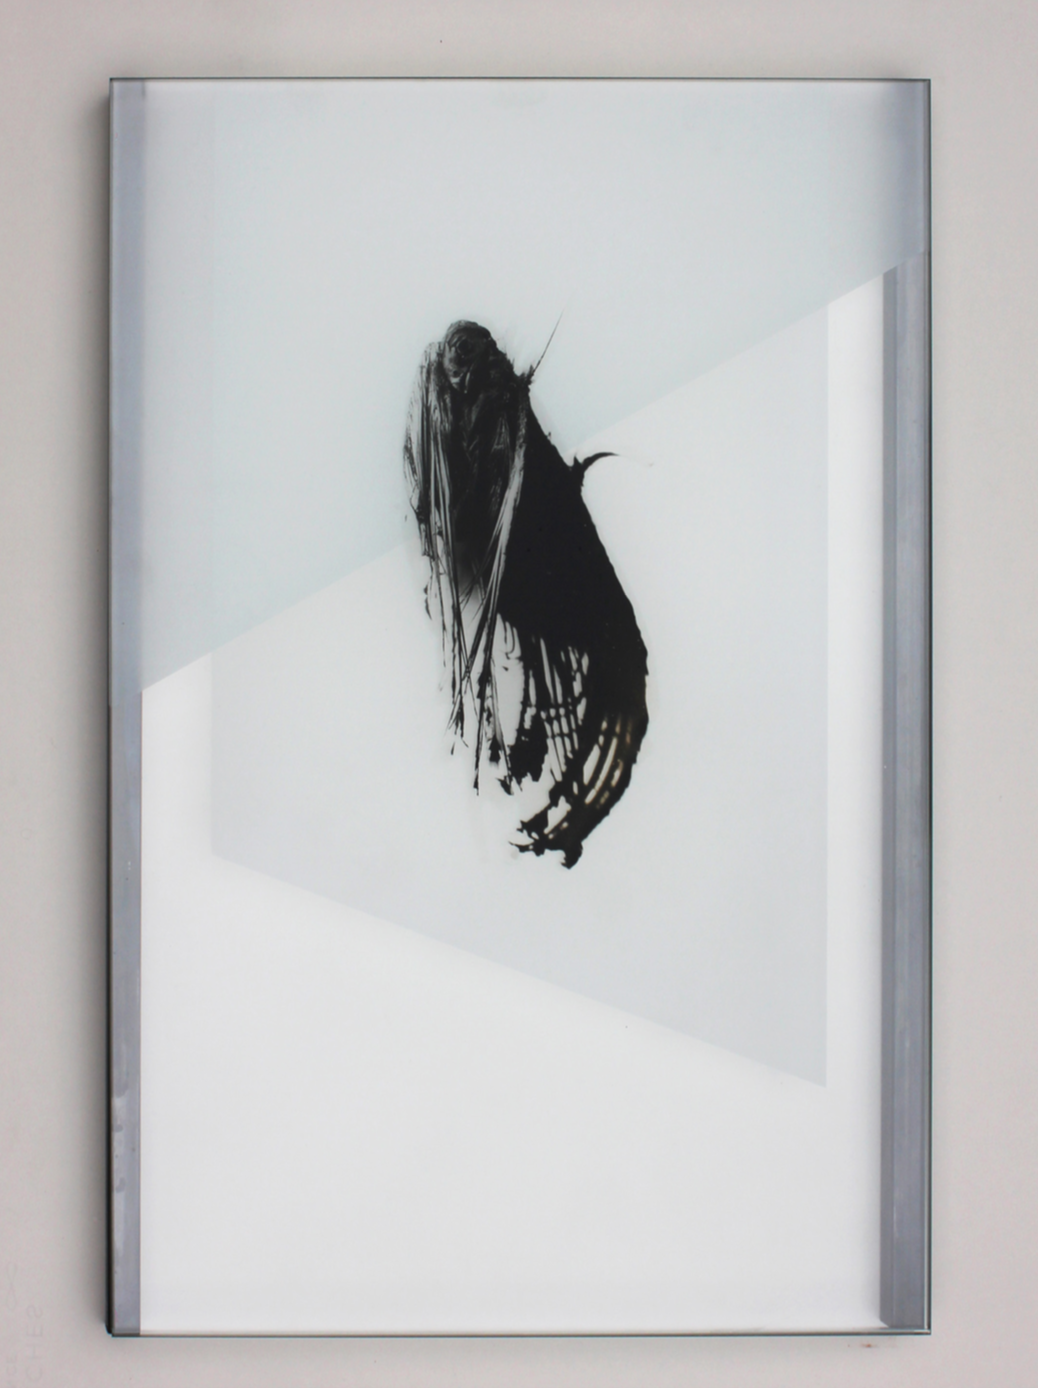 Pia Rondé & Fabien Saleil, Les profanes #02, 2020 photographie argentique, mousseline, acier 60 x 40 cm. Unique, courtesy galerie Valeria Cetraro.